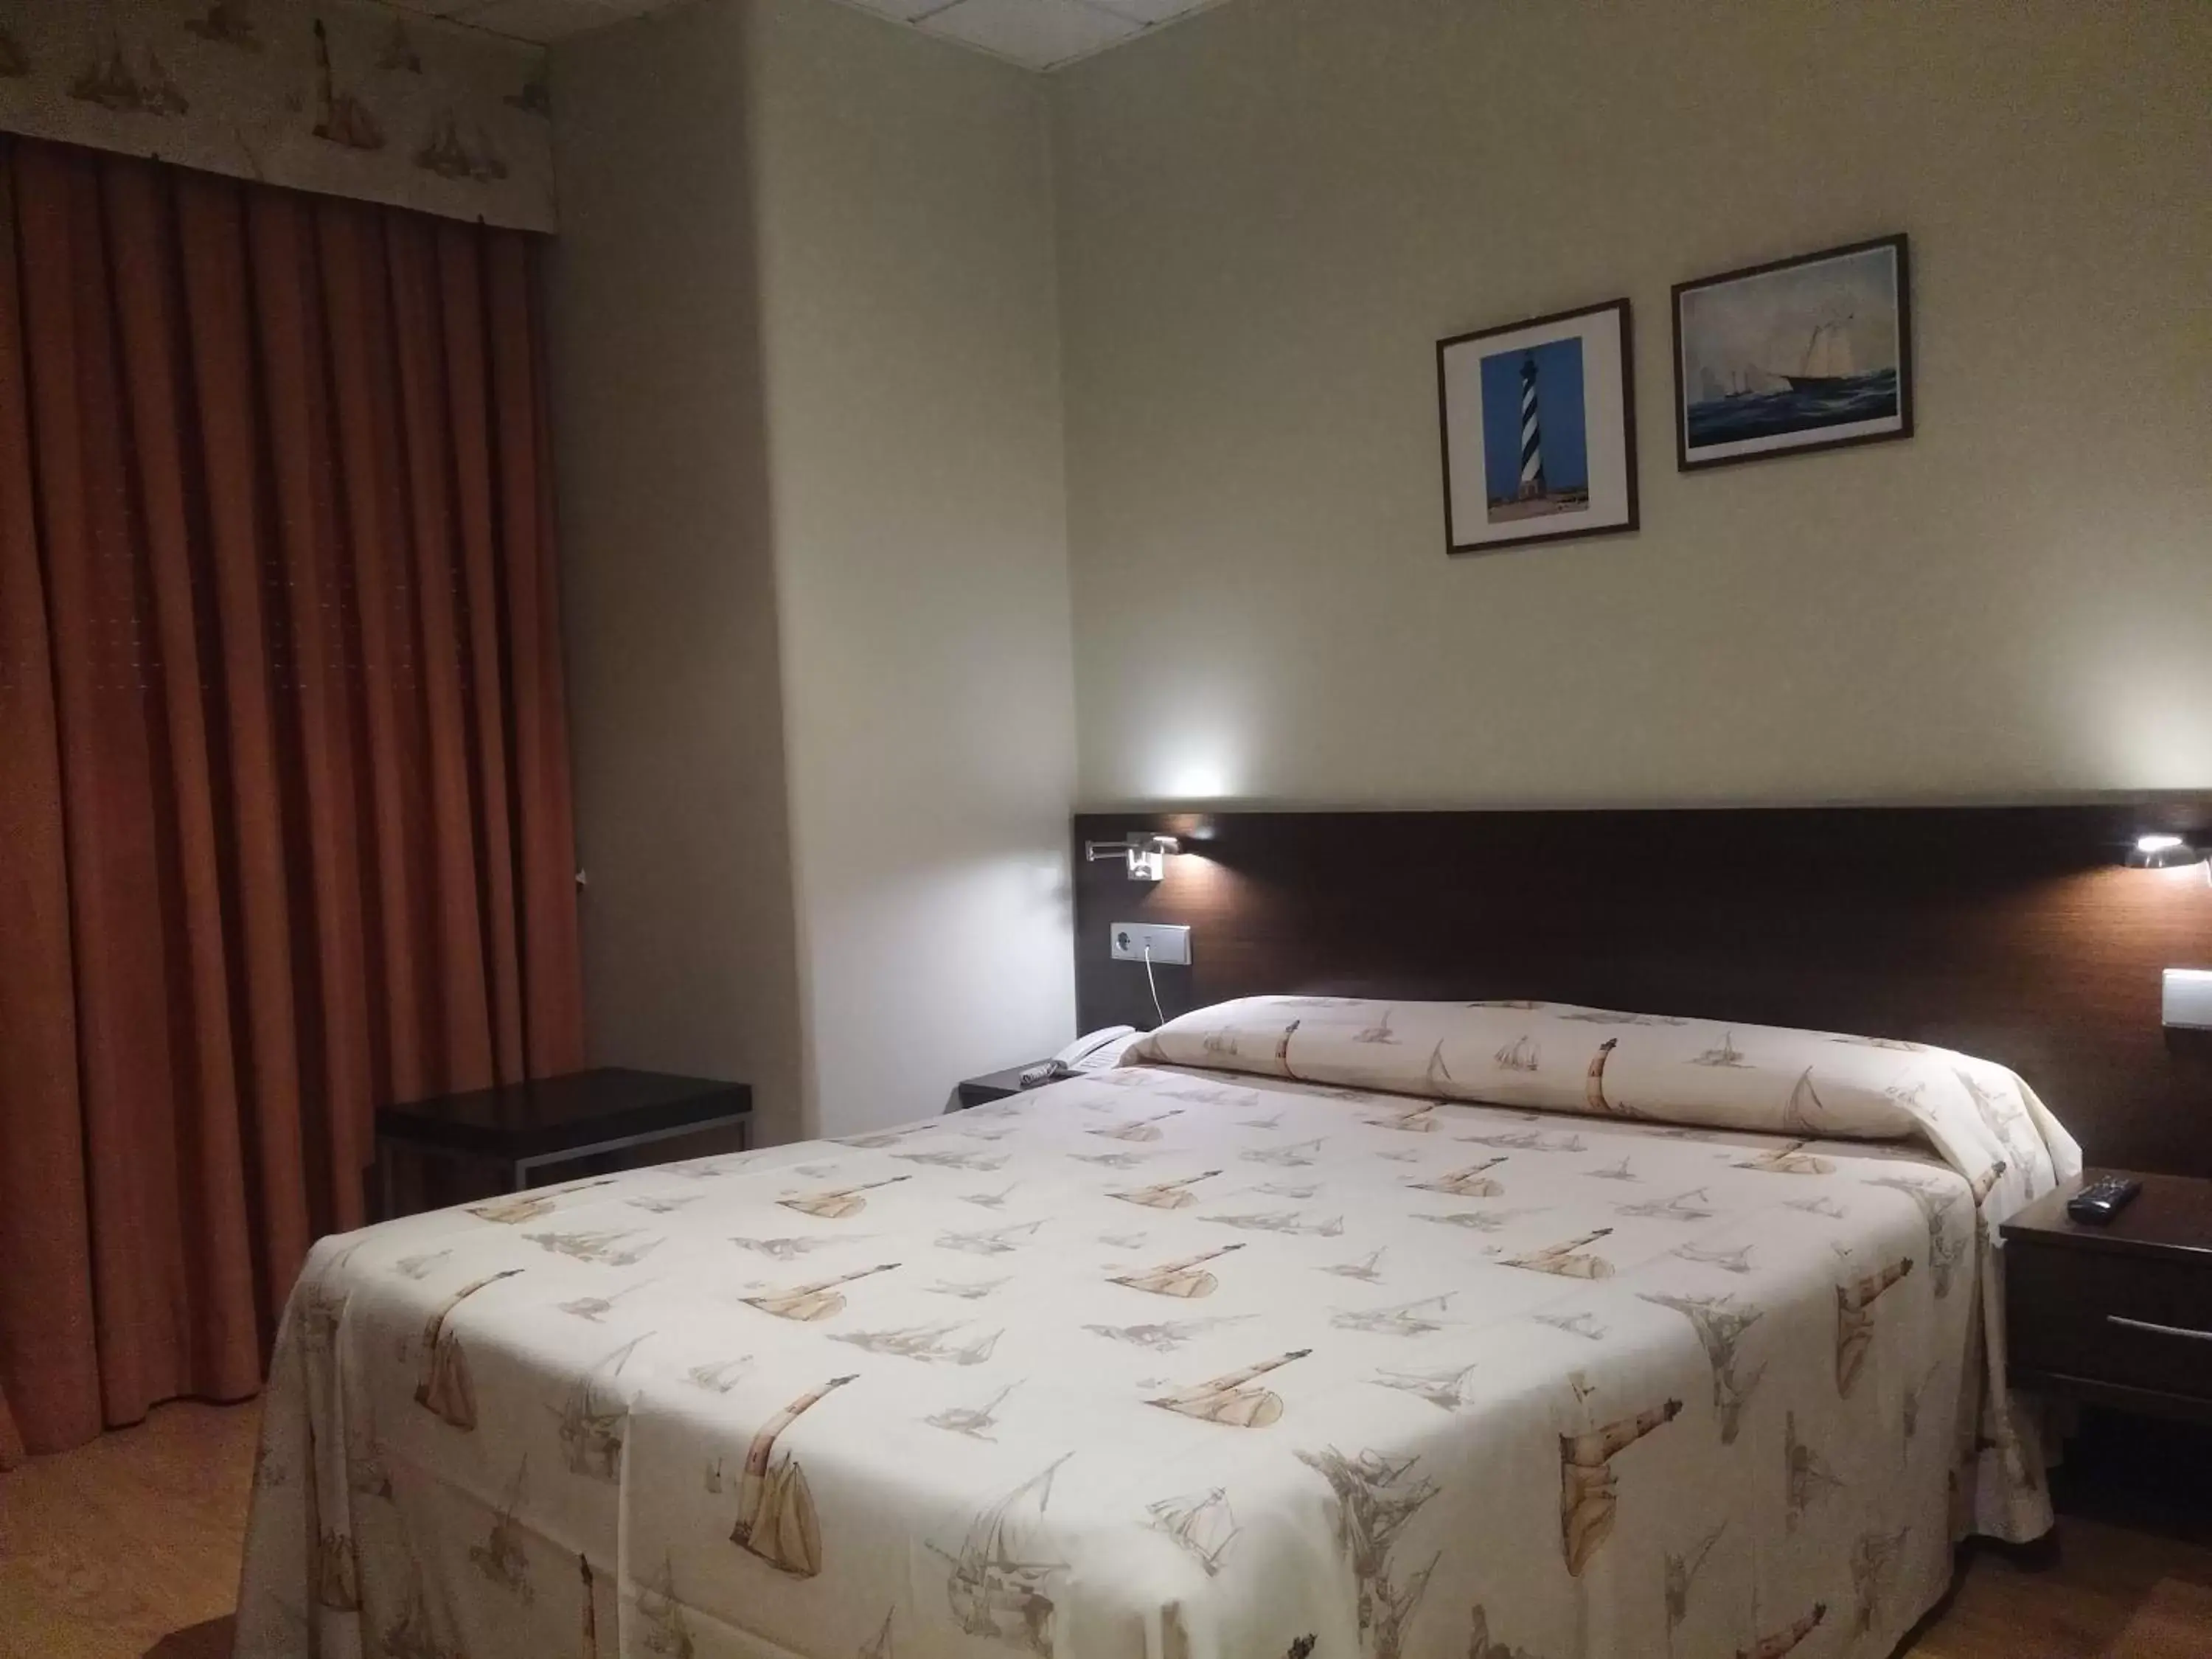 Bedroom, Room Photo in Hotel Náutico